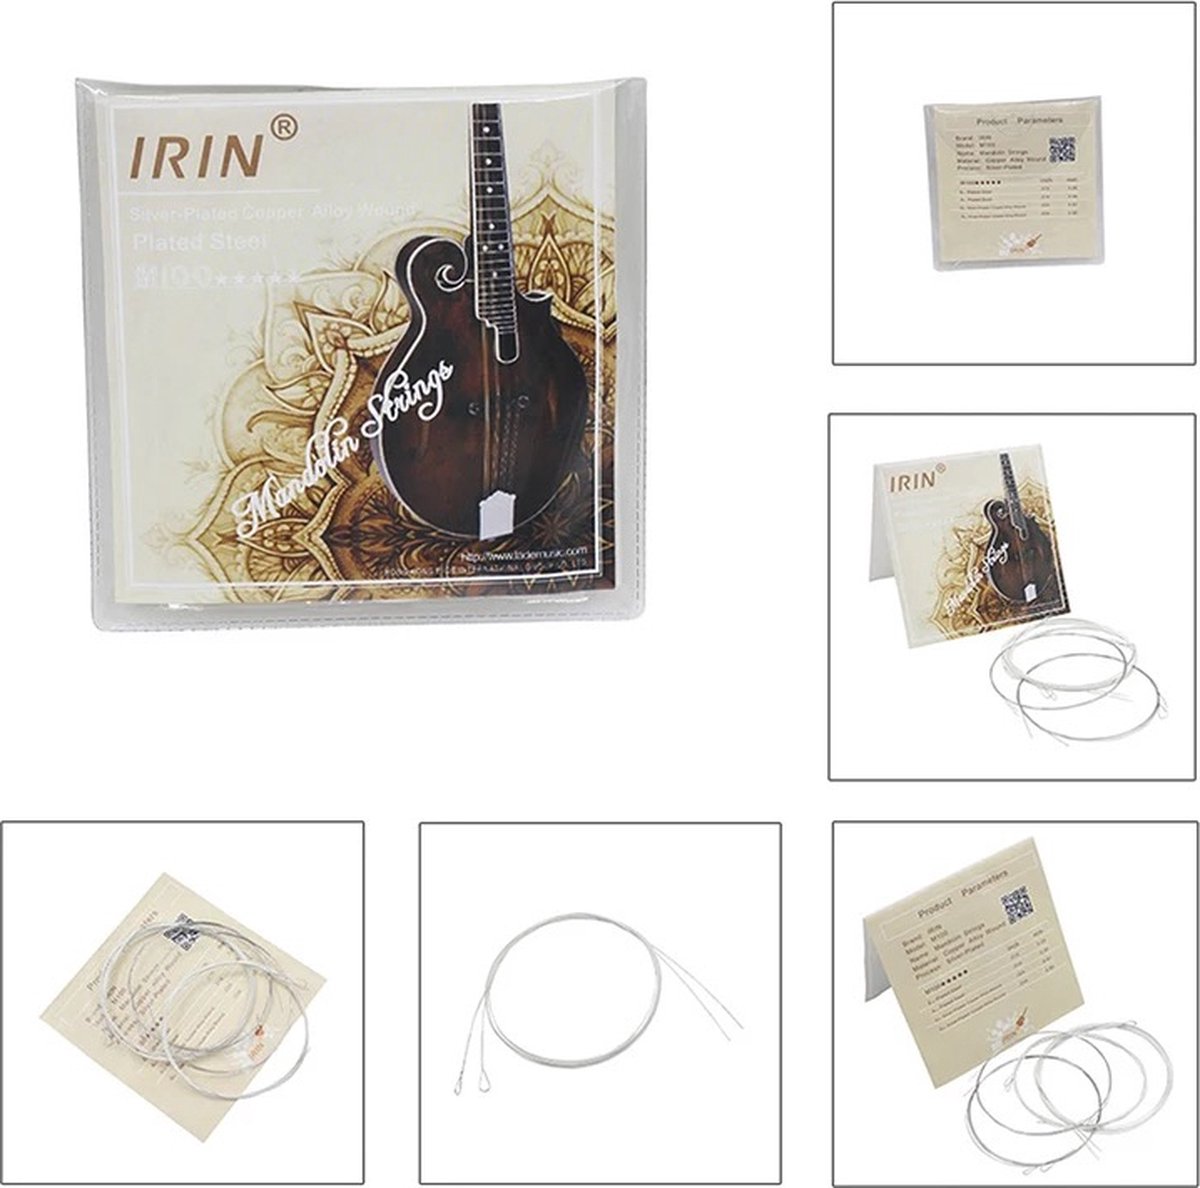 IRIN M100 - Mandoline snaren - Snaren voor Mandoline - 8 snarige mandoline - Professionele Mandoline snaren - Silver-Plated copper alloy wound